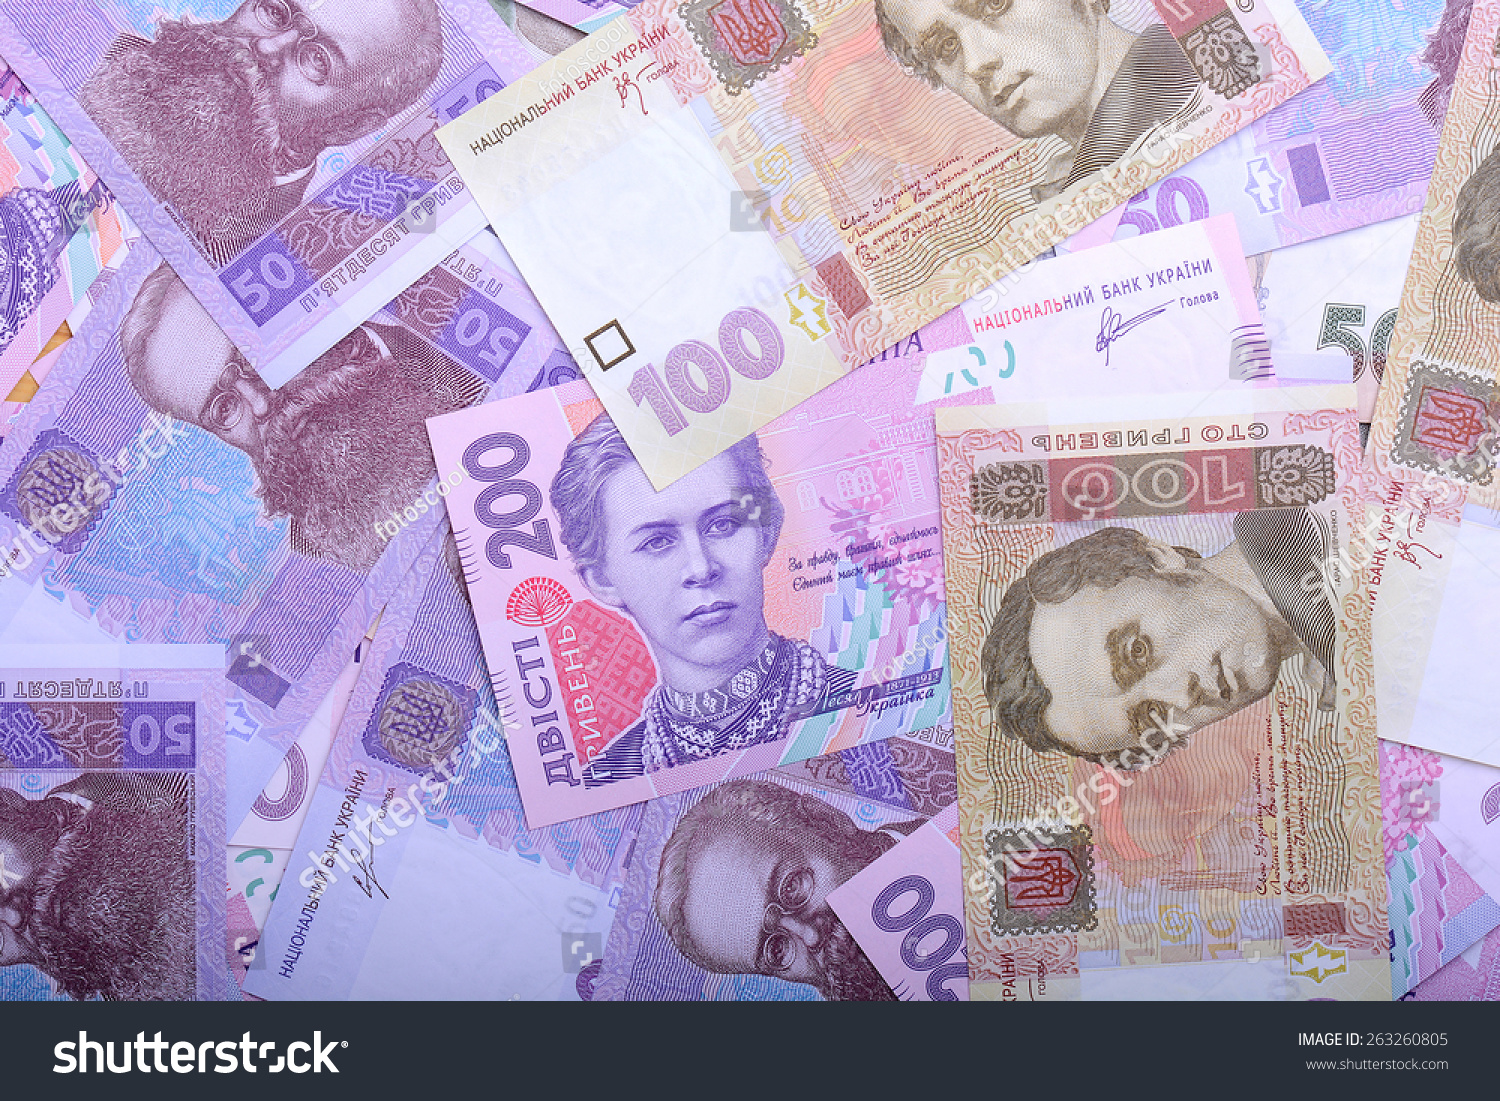 Astonishment moderately nickel European Money Ukrainian Hryvnia Grivna Stock Photo 263260805 | Shutterstock